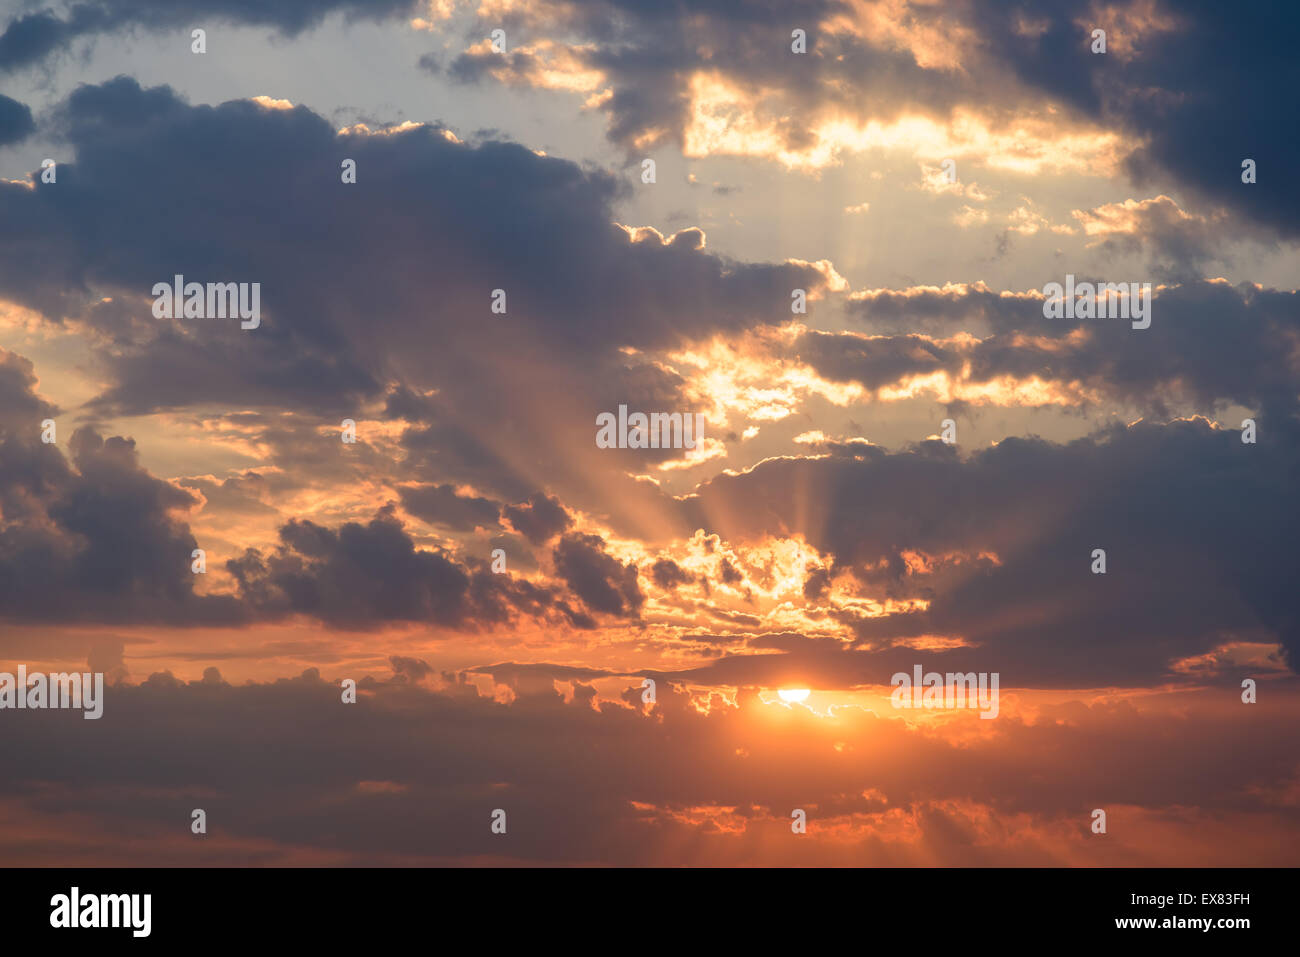 Estate tramonto con bellissimo cielo molto nuvoloso Foto Stock